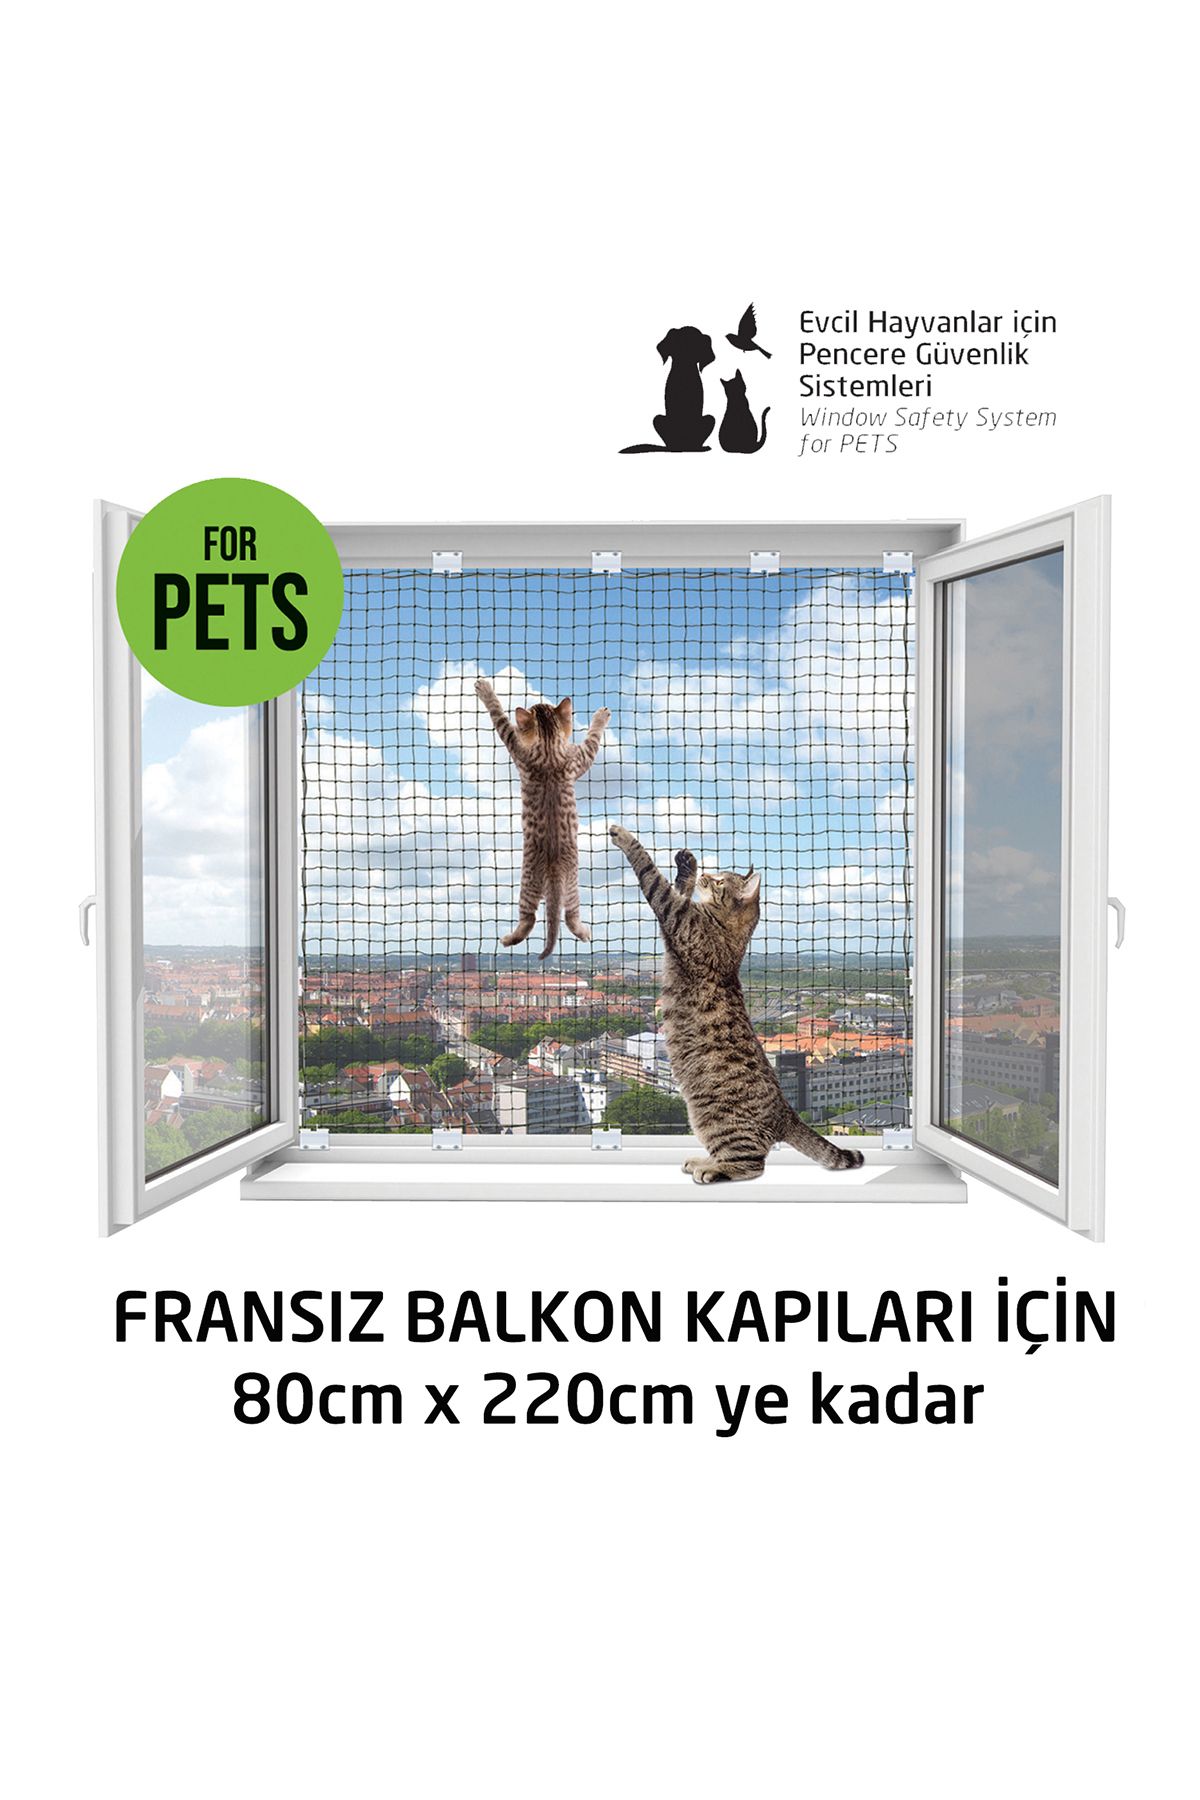 WINBLOCK Pets – Kediler Için Pencere Güvenlik Ağı, Kedi Filesi Sistemi – Fransız Balkon Kapısı